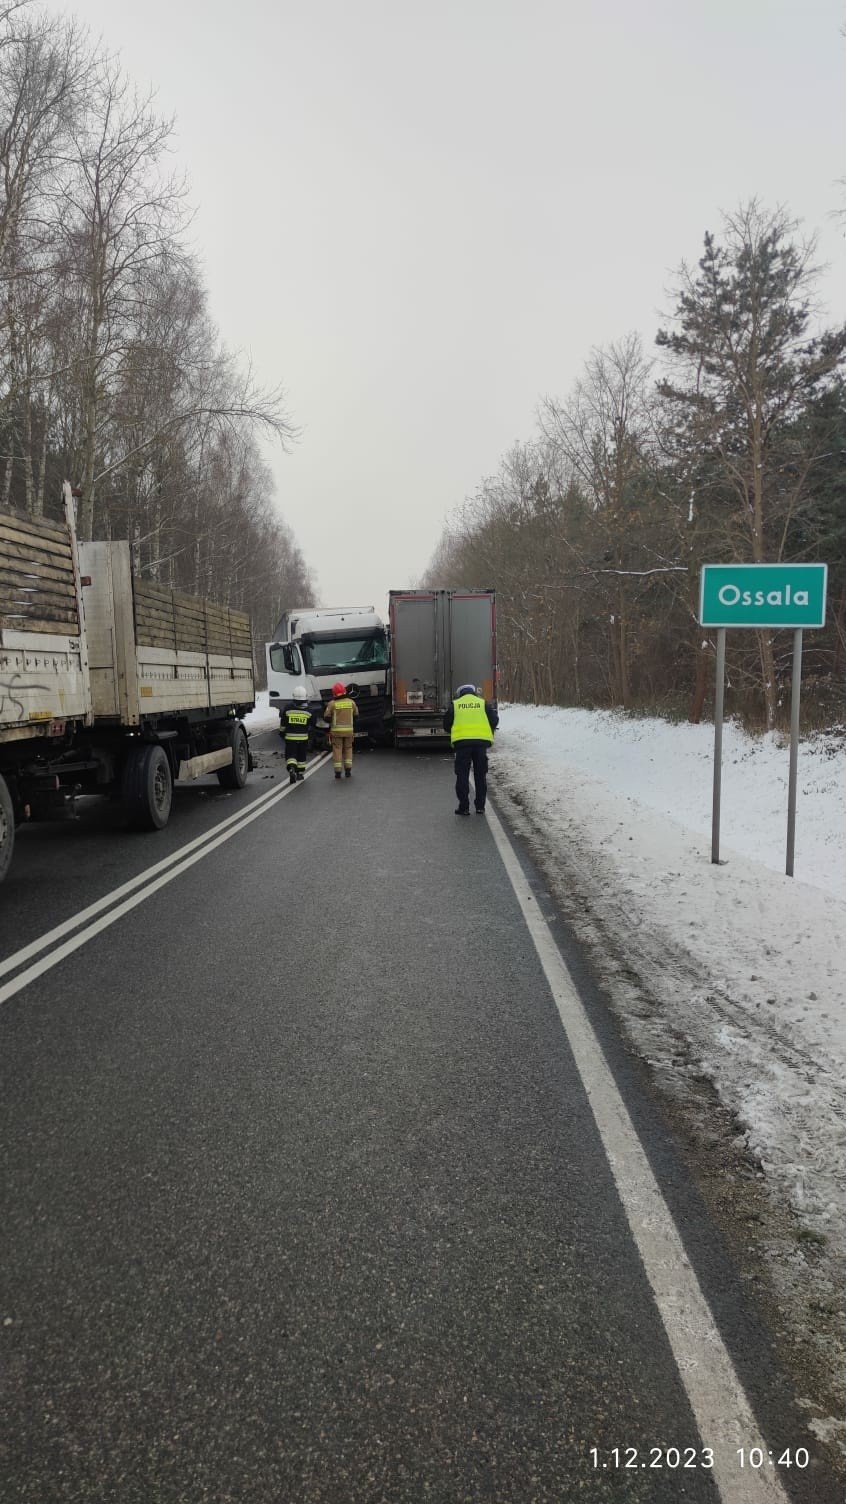 Karambol w miejscowości Ossala w powiecie staszowskim. Zderzyły się cztery ciężarówki. Droga krajowa numer 79 była całkowicie zablokowana